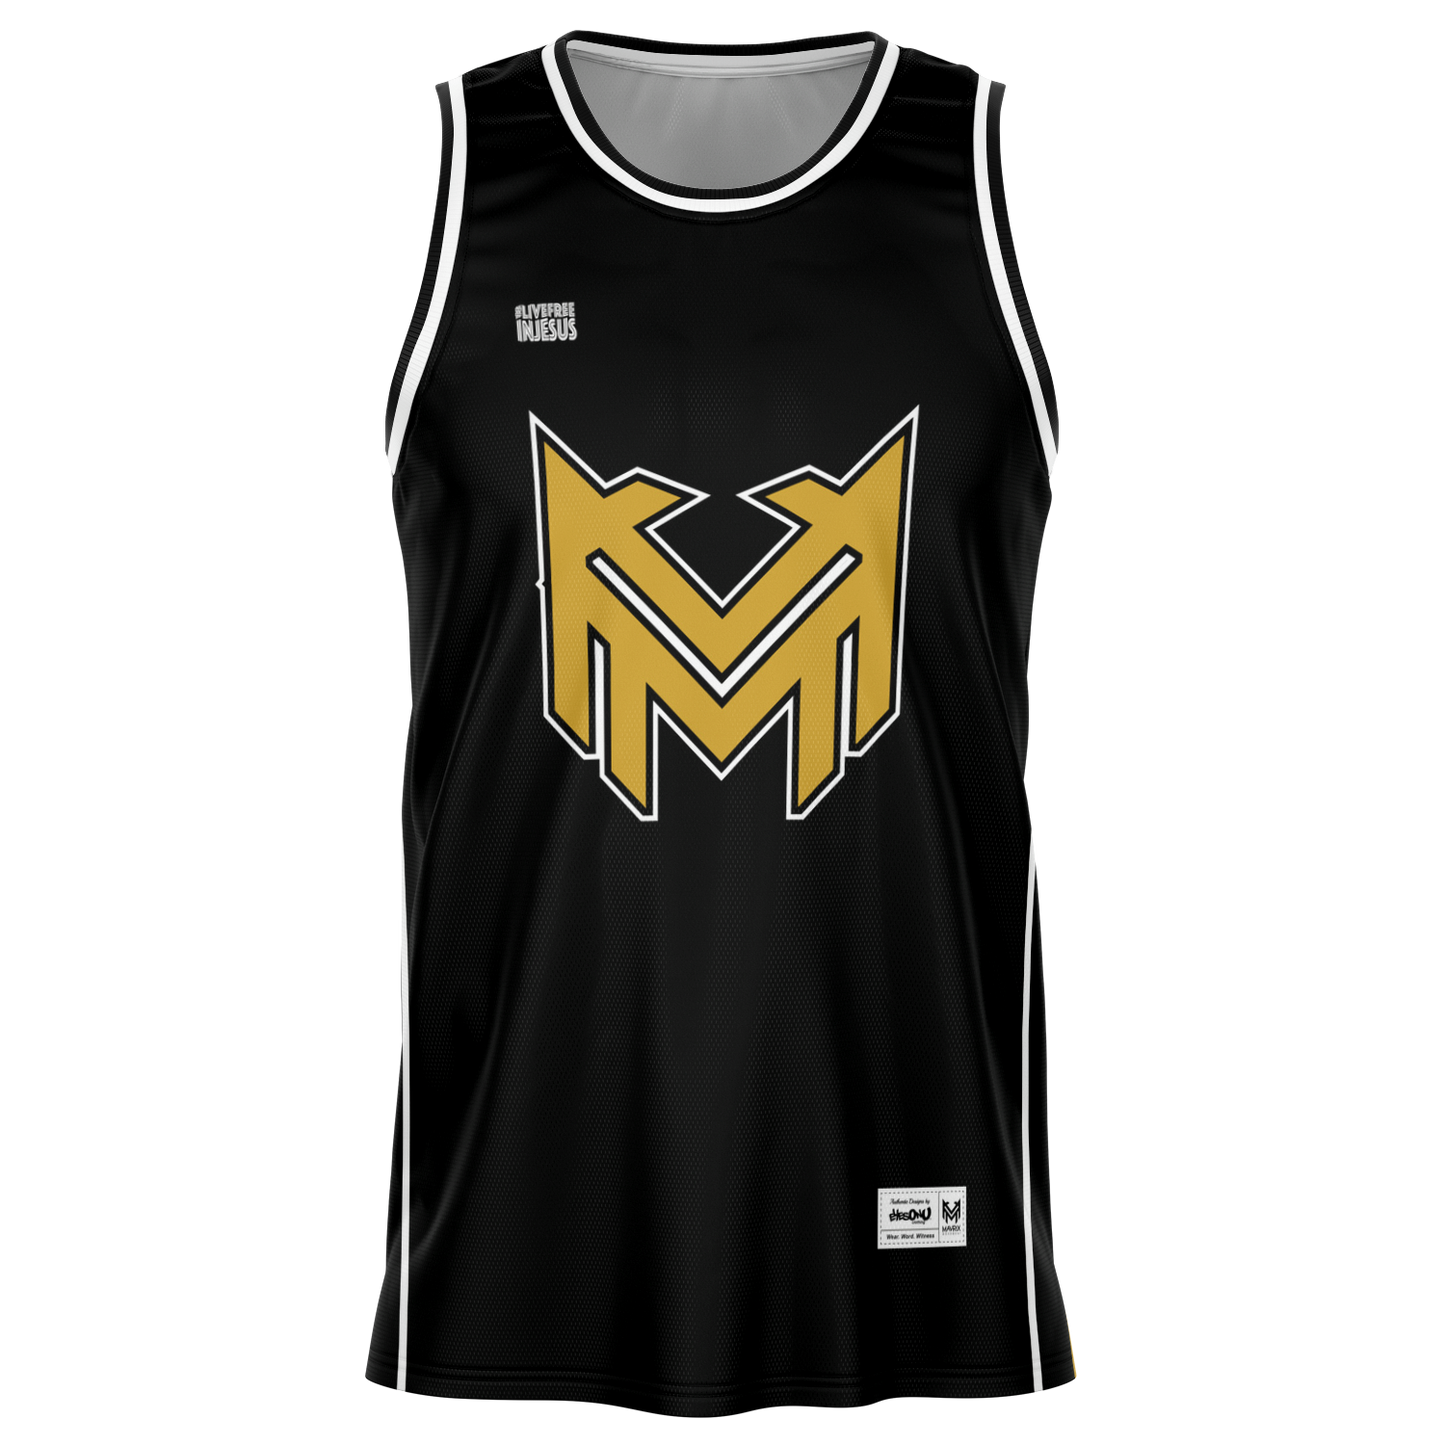 Mavrix Team BlkGold - Basketball Jersey